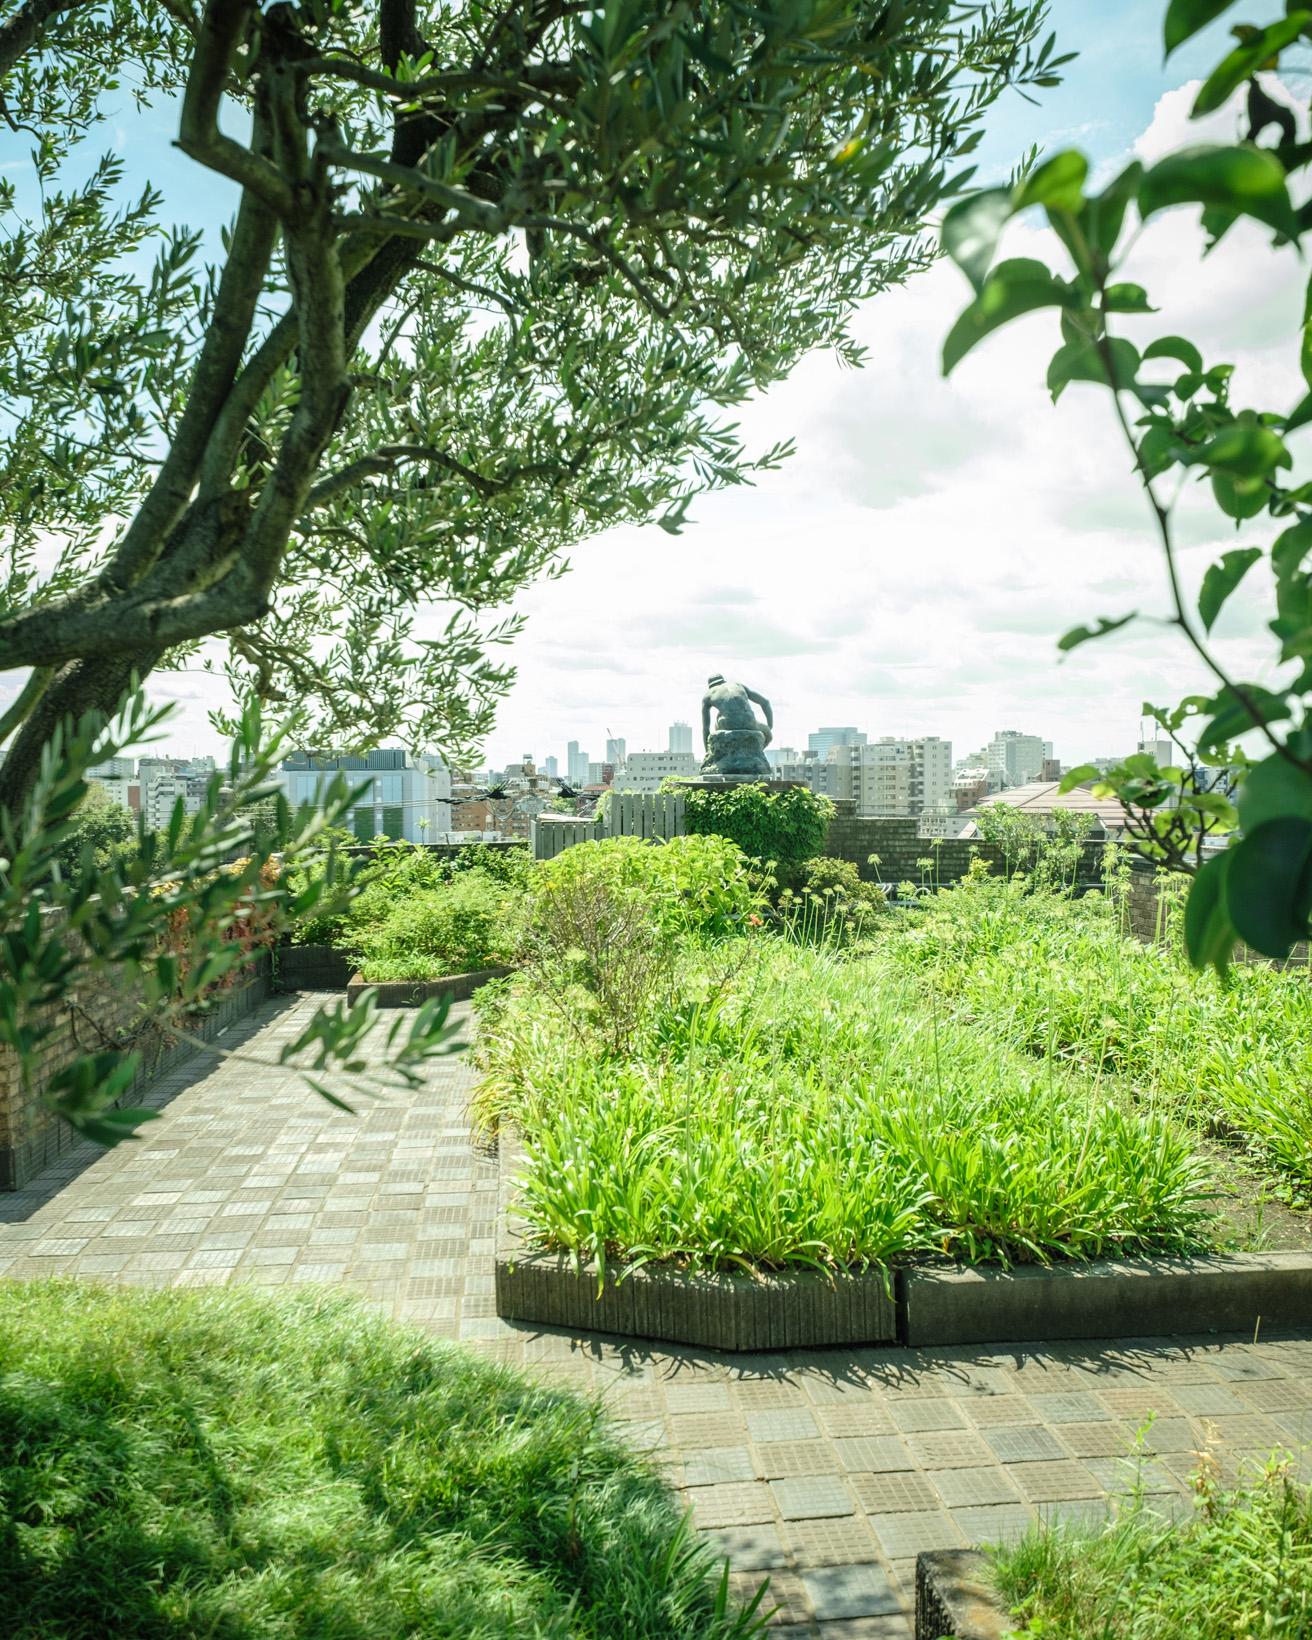 オリーブの大木が茂る屋上庭園は、コンクリート建築の屋上緑化の貴重な事例として評価されている。朝倉が主宰した朝倉彫塑塾では園芸が必須科目で、塾生の園芸実習の場として活用されていた。